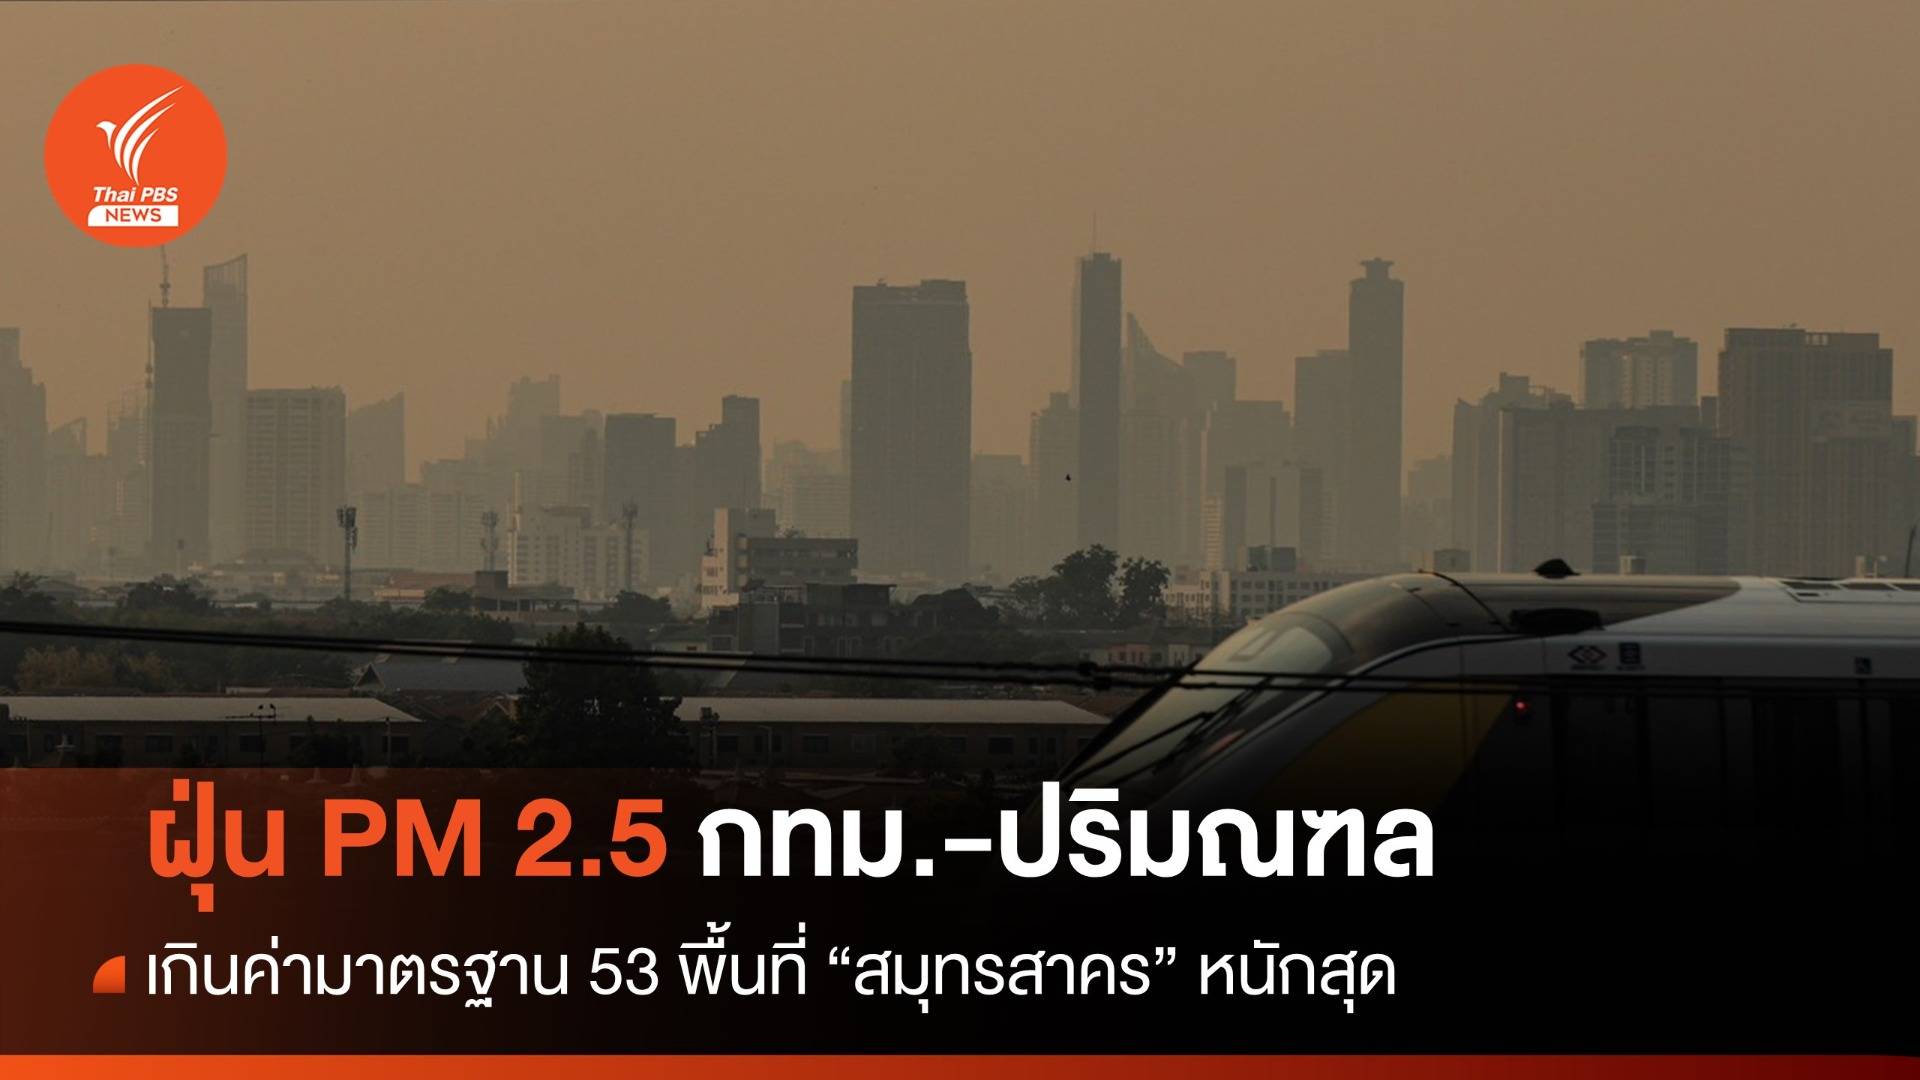 ฝุ่น PM 2.5 กทม.-ปริมณฑล เกินค่ามาตรฐาน 53 พื้นที่ "สมุทรสาคร" หนักสุด